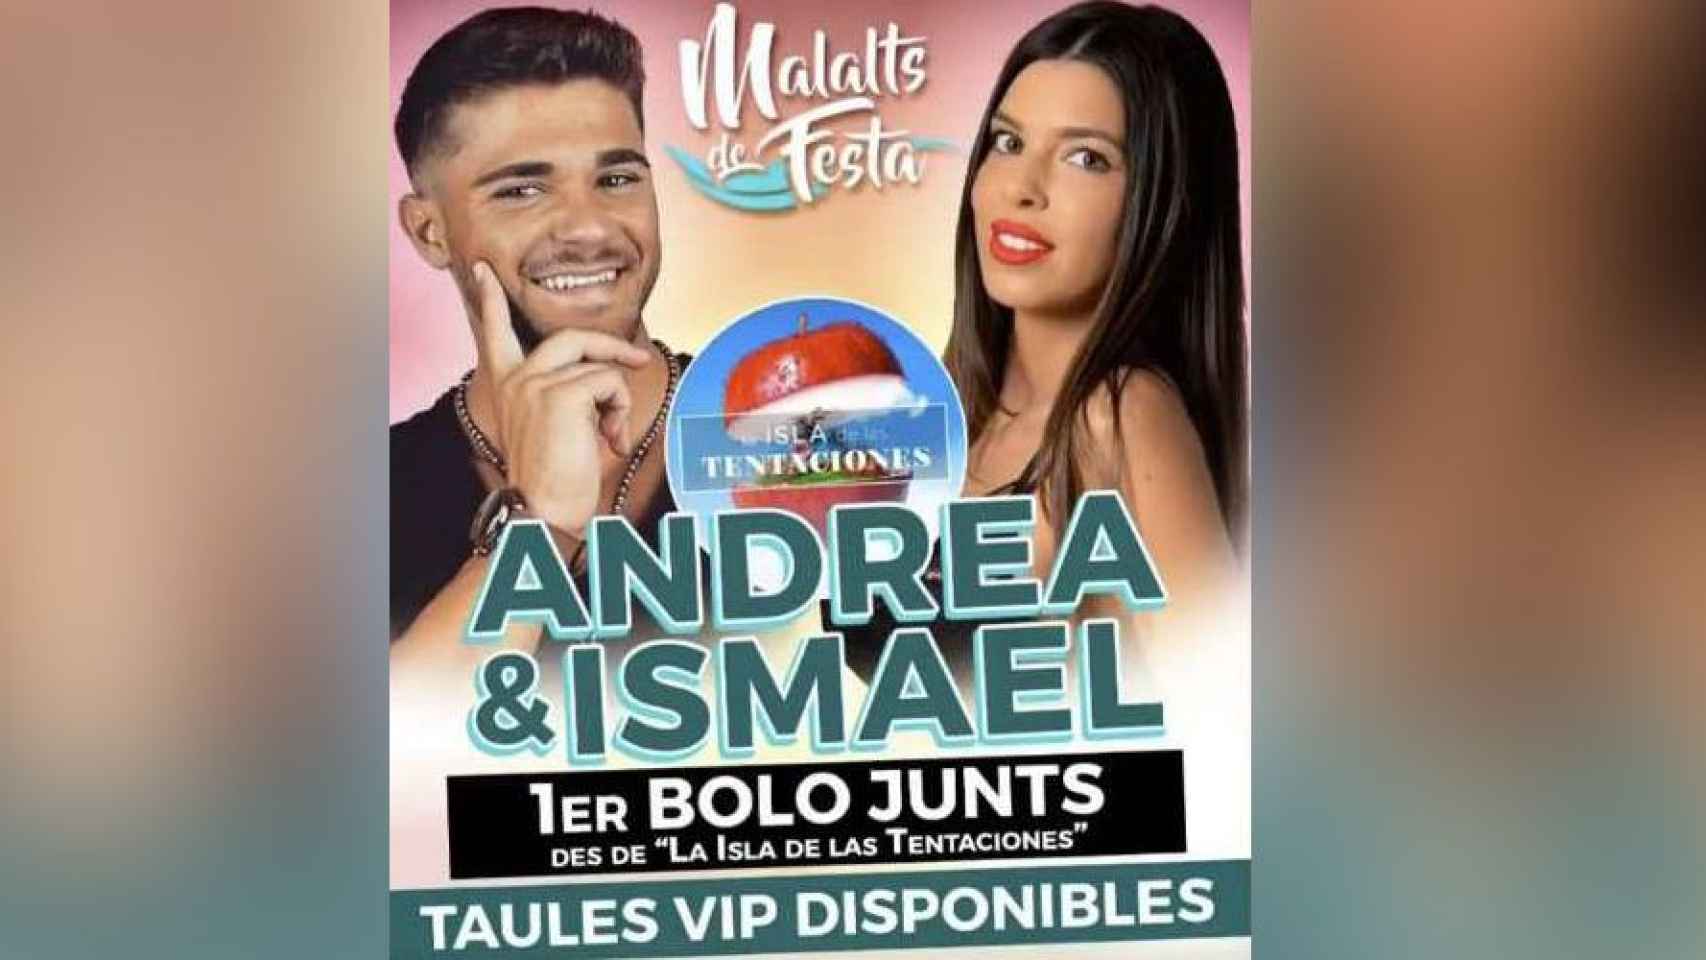 Flyer de la discoteca Malalts de Festa a la que irán Andrea e Ismael de 'La isla de las tentaciones' como invitados